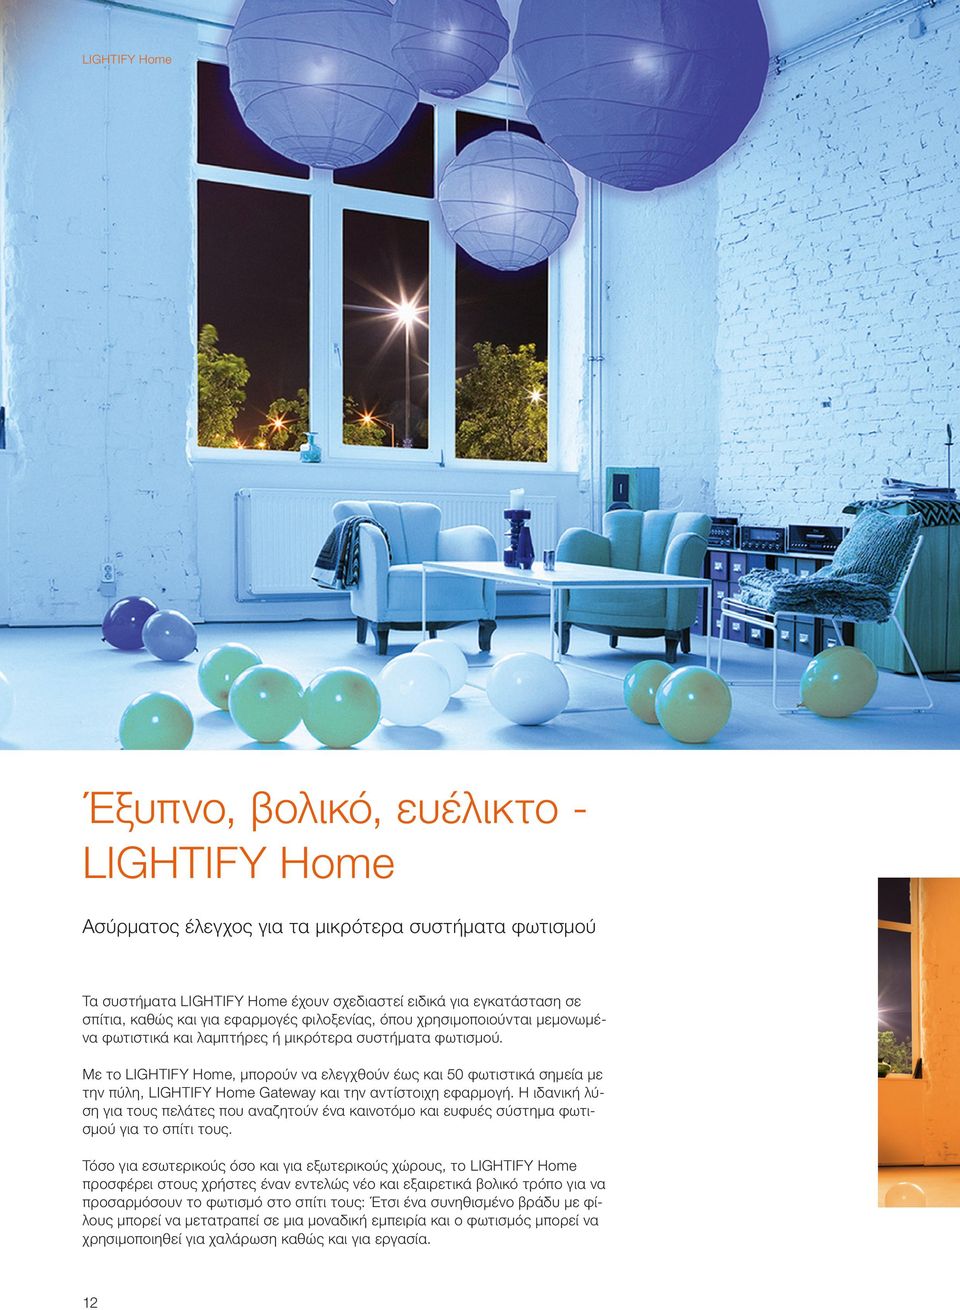 Με το LIGHTIFY Home, μπορούν να ελεγχθούν έως και 50 φωτιστικά σημεία με την πύλη, LIGHTIFY Home Gateway και την αντίστοιχη εφαρμογή.